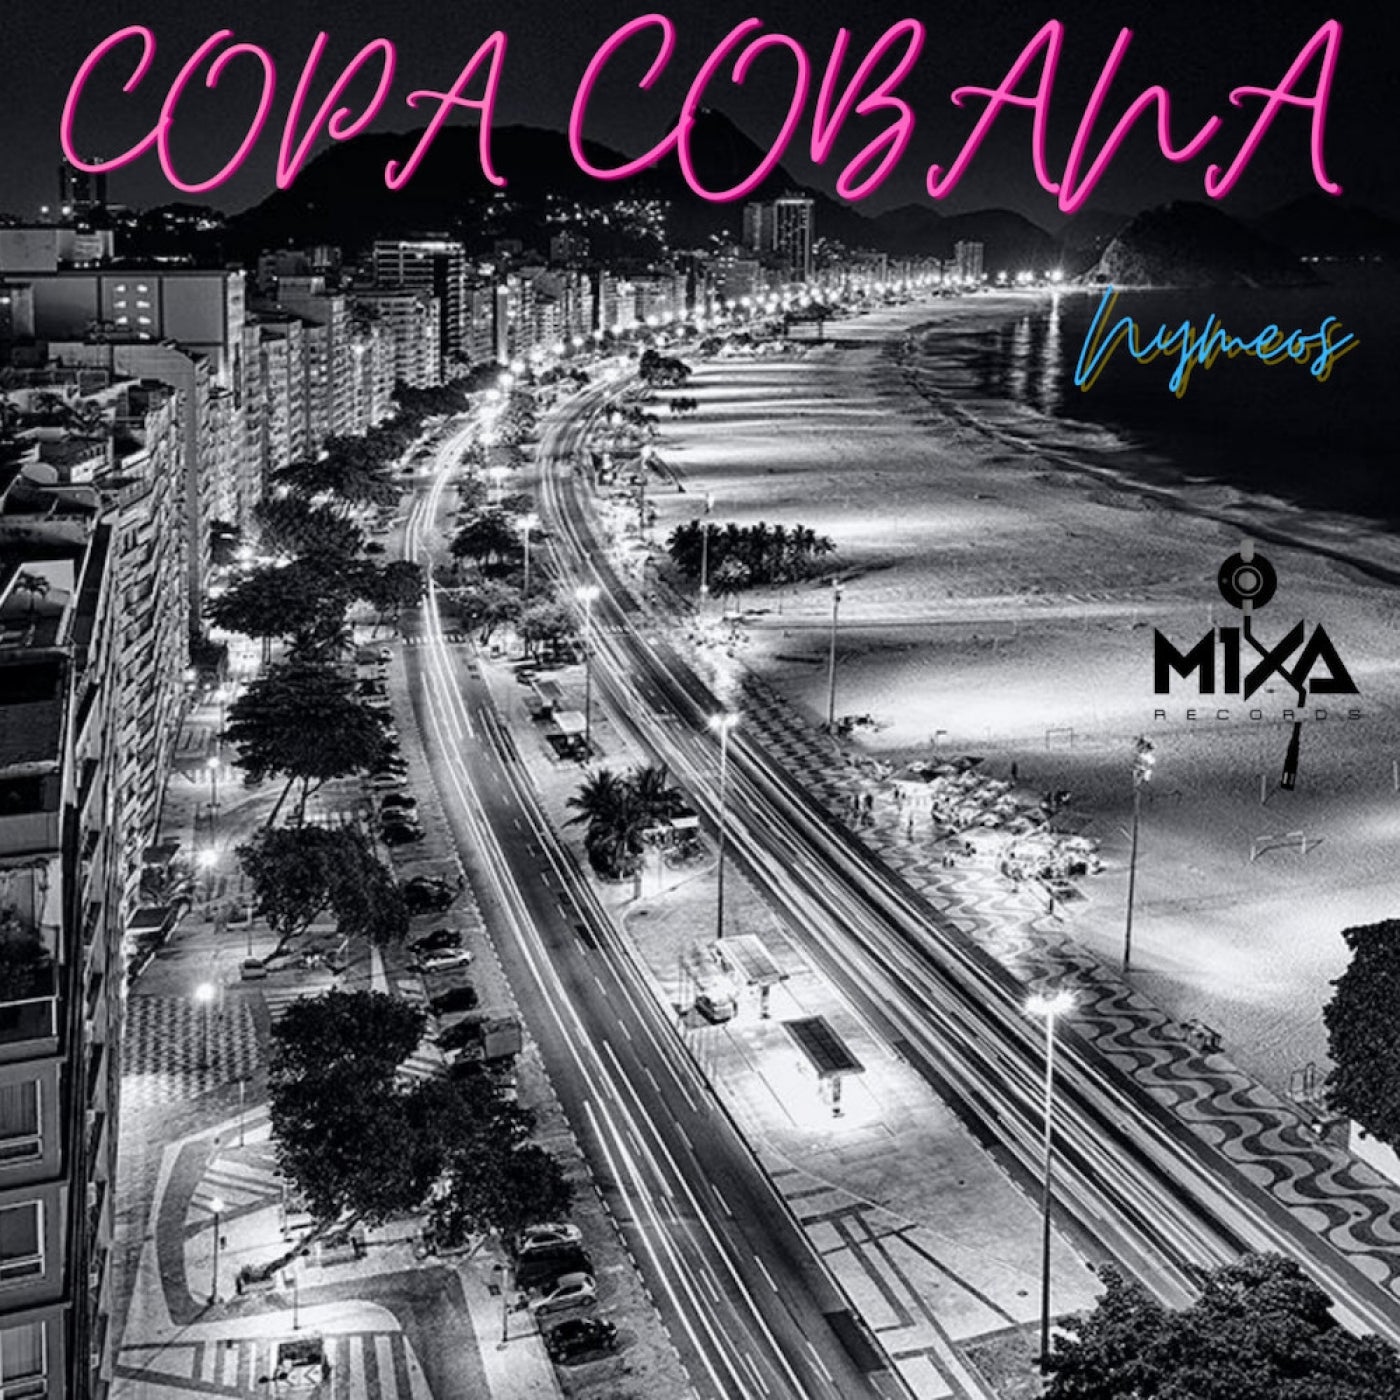 Copa Cobana